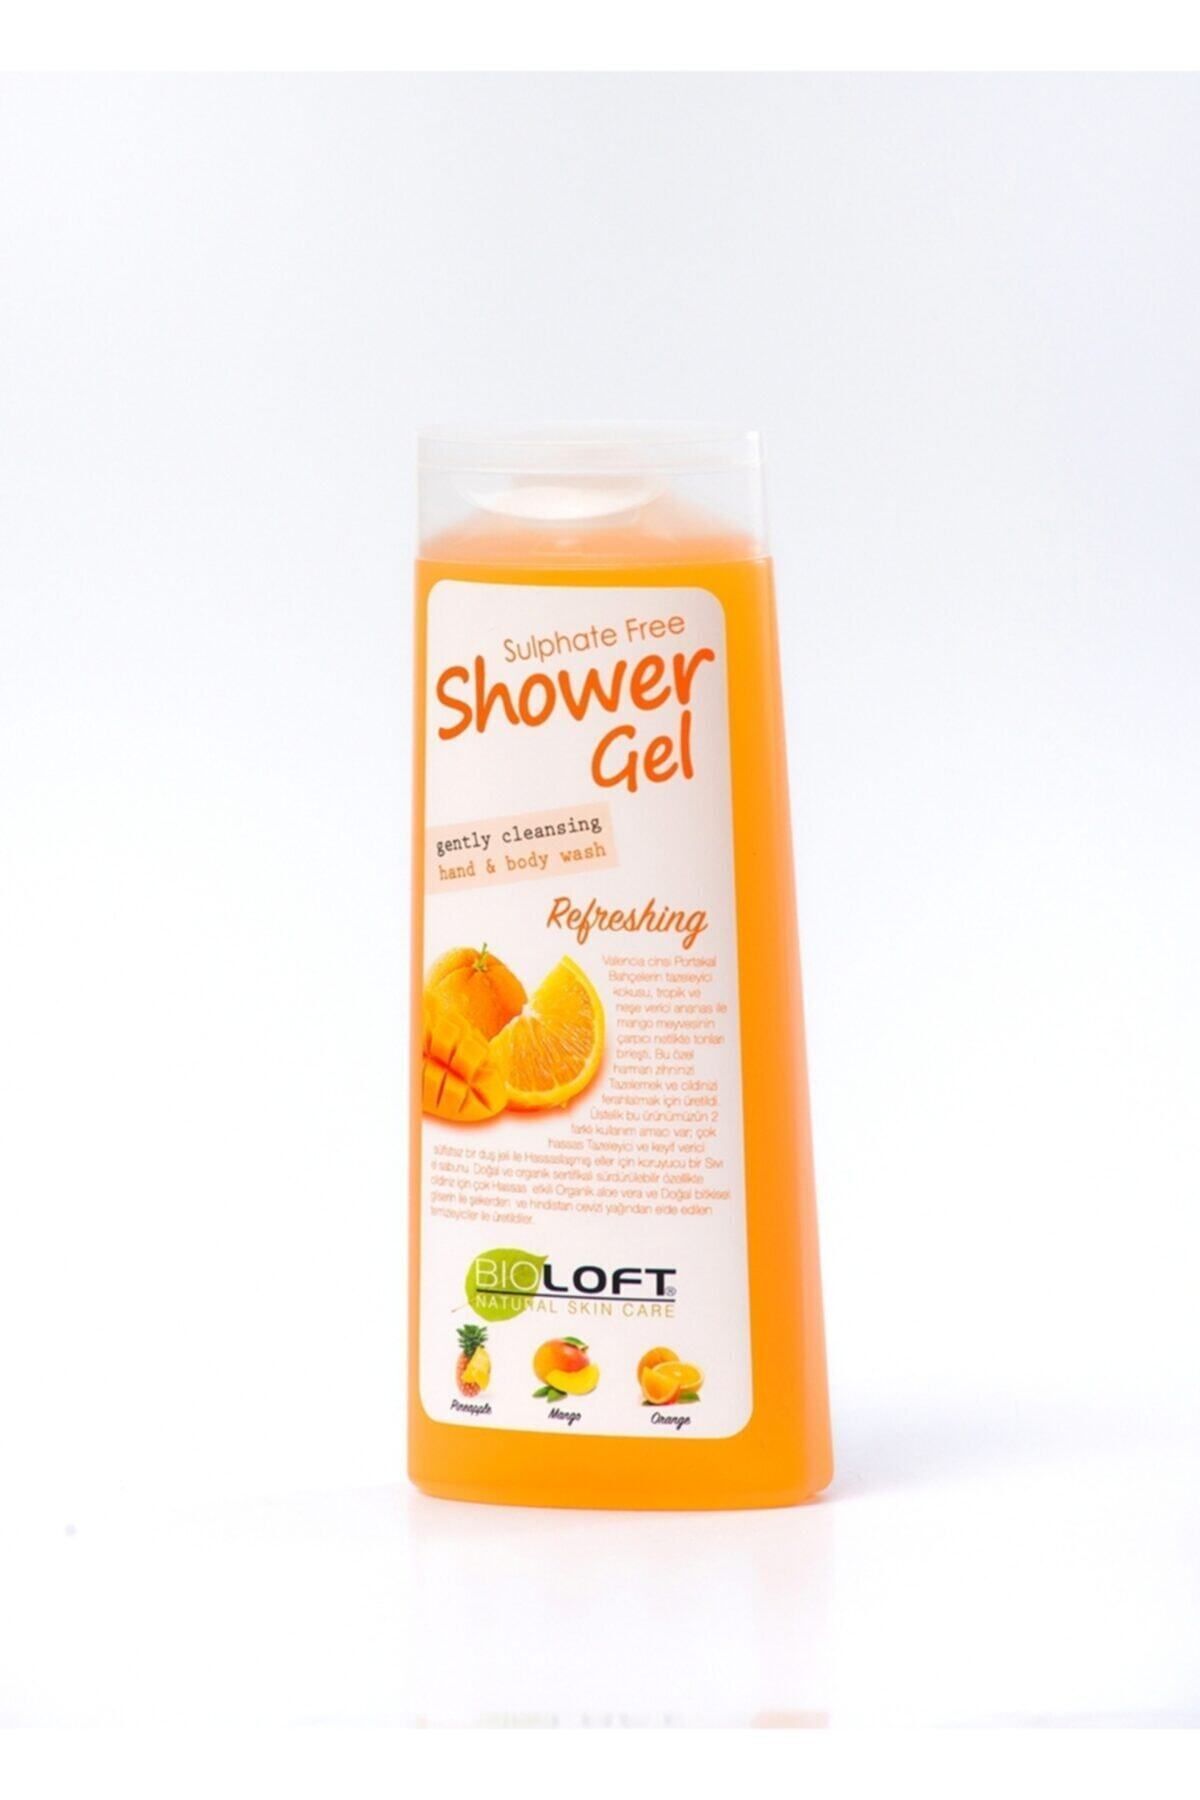 Loft Natural Sülfatsız Parabensiz Duş Jeli Refreshıng(portakal Bahçelerin Tazeleyici Kokusu)